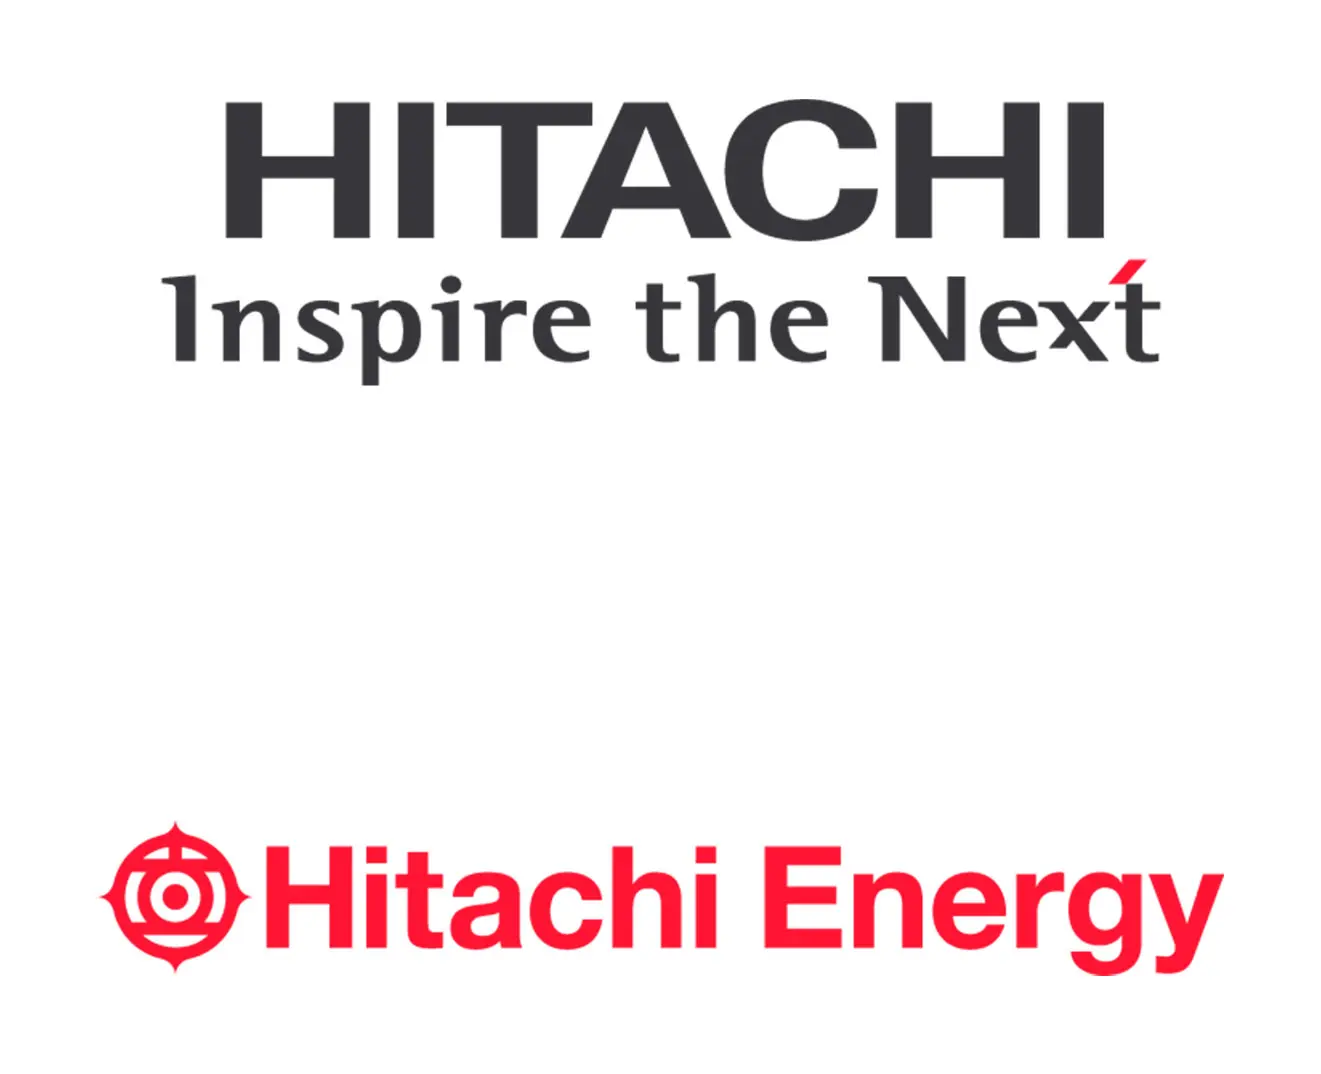 Hitachi_Energy_Inspire_Next_